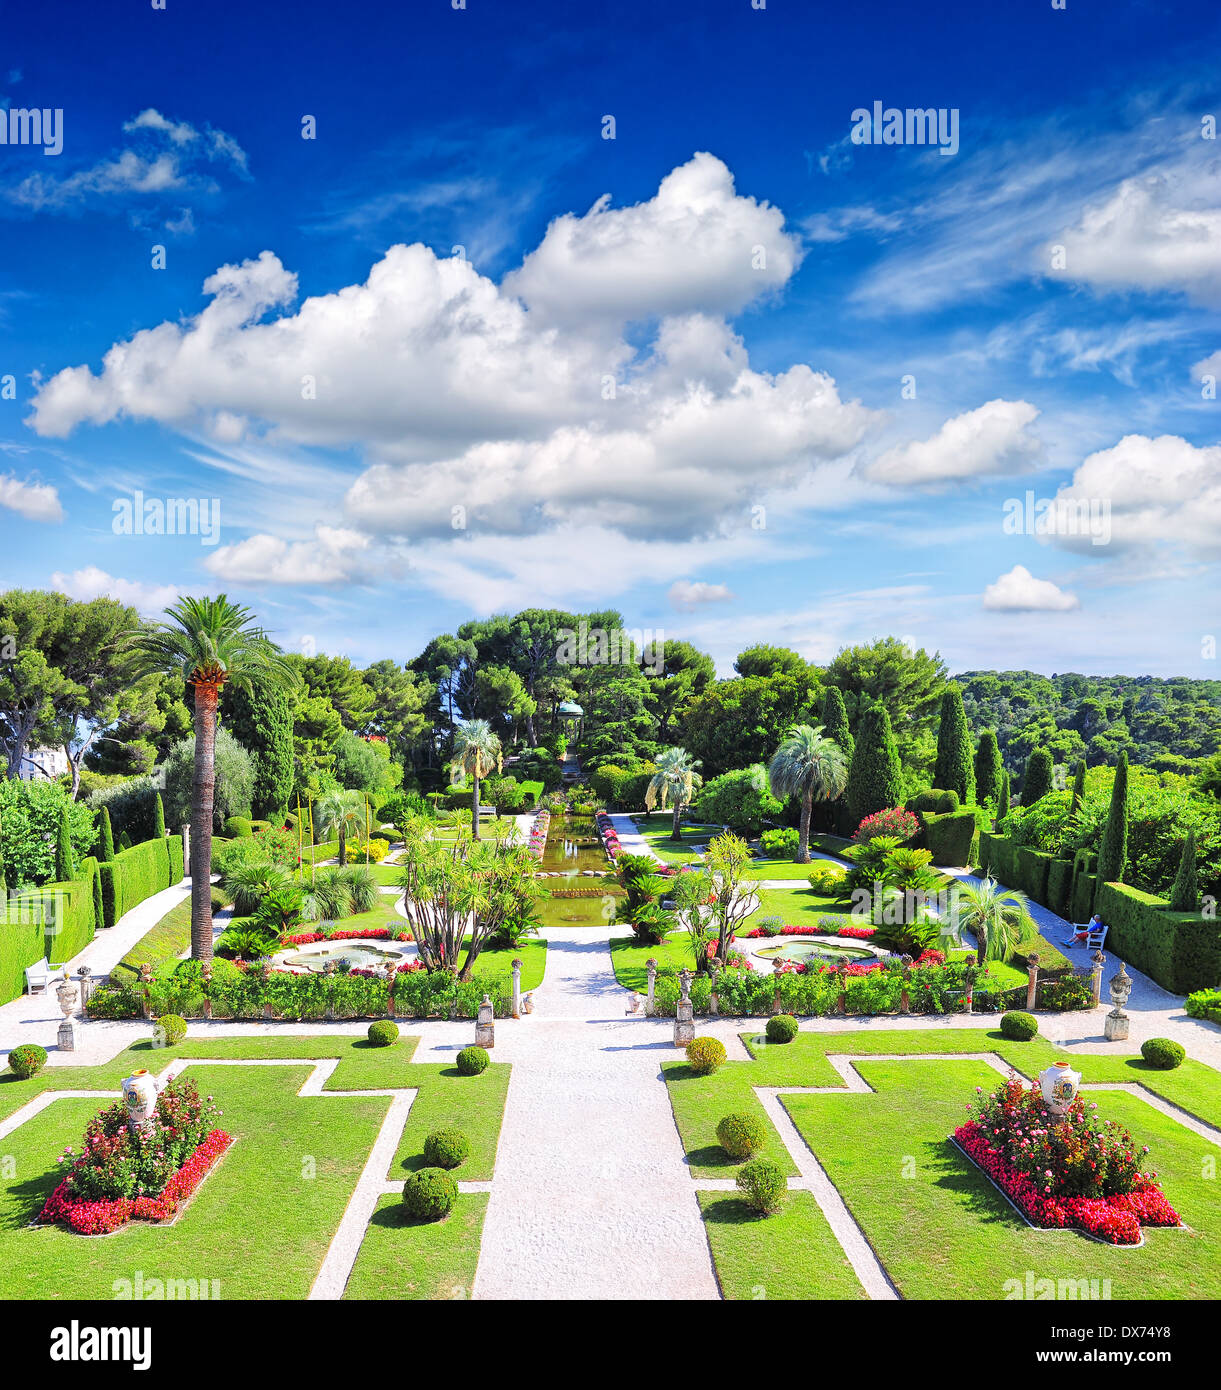 schönen mediterranen Garten an der französischen Riviera in der Nähe von Nizza und Monaco. Landschaft mit blauen Wolkenhimmel Stockfoto